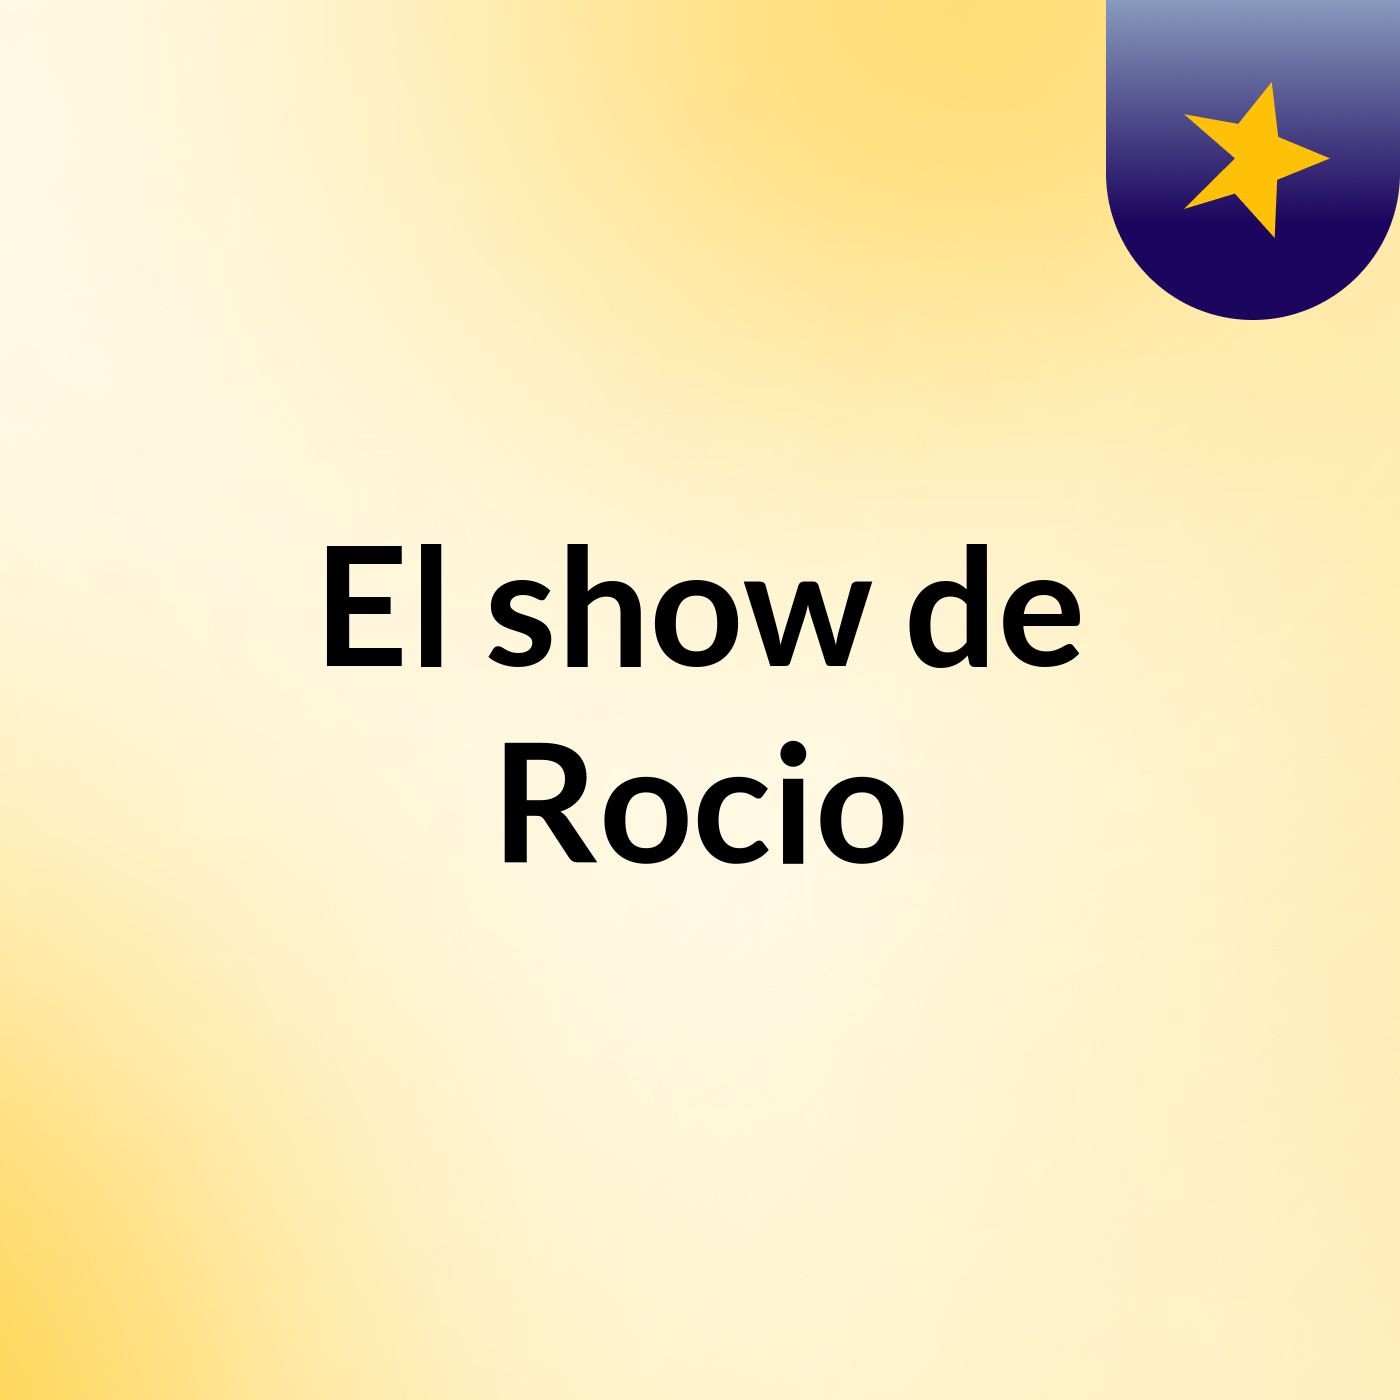 El show de Rocio